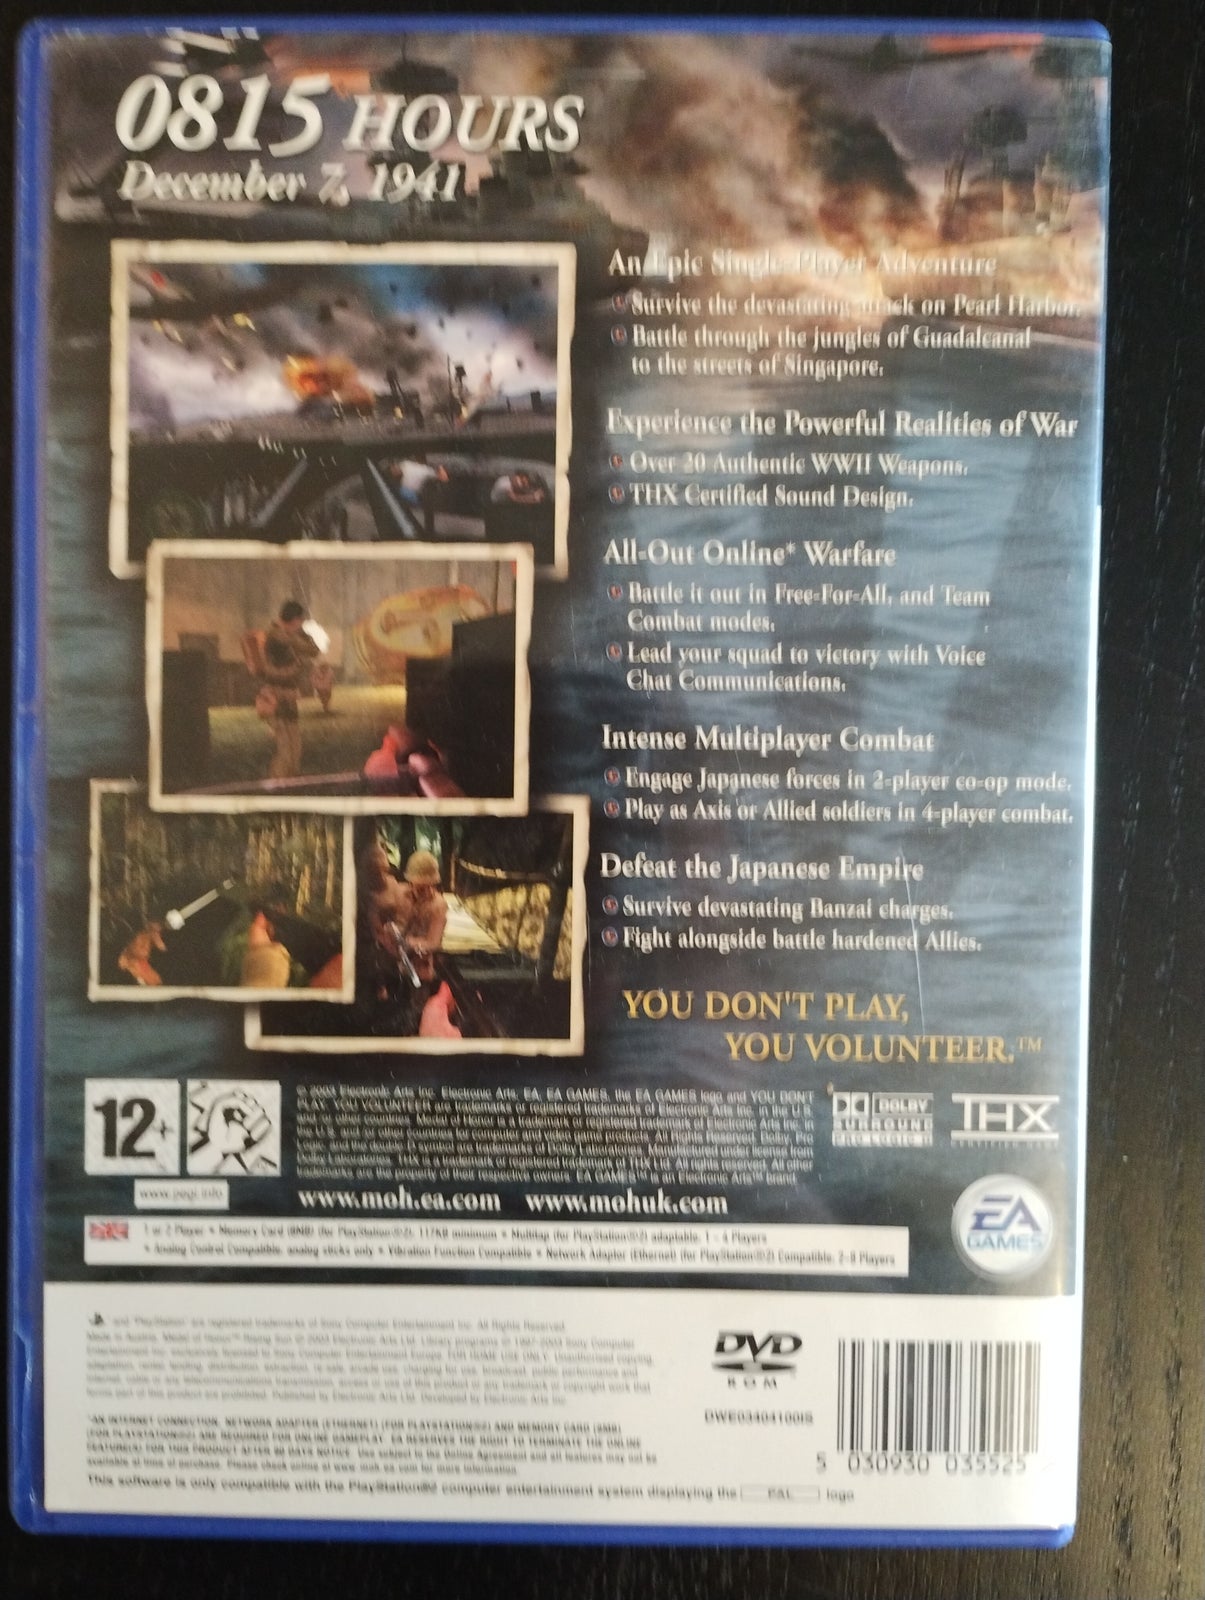 Jogo Medal of Honor: Rising Sunn - PS2 pal Europeu Original (Usado) em  Promoção na Americanas